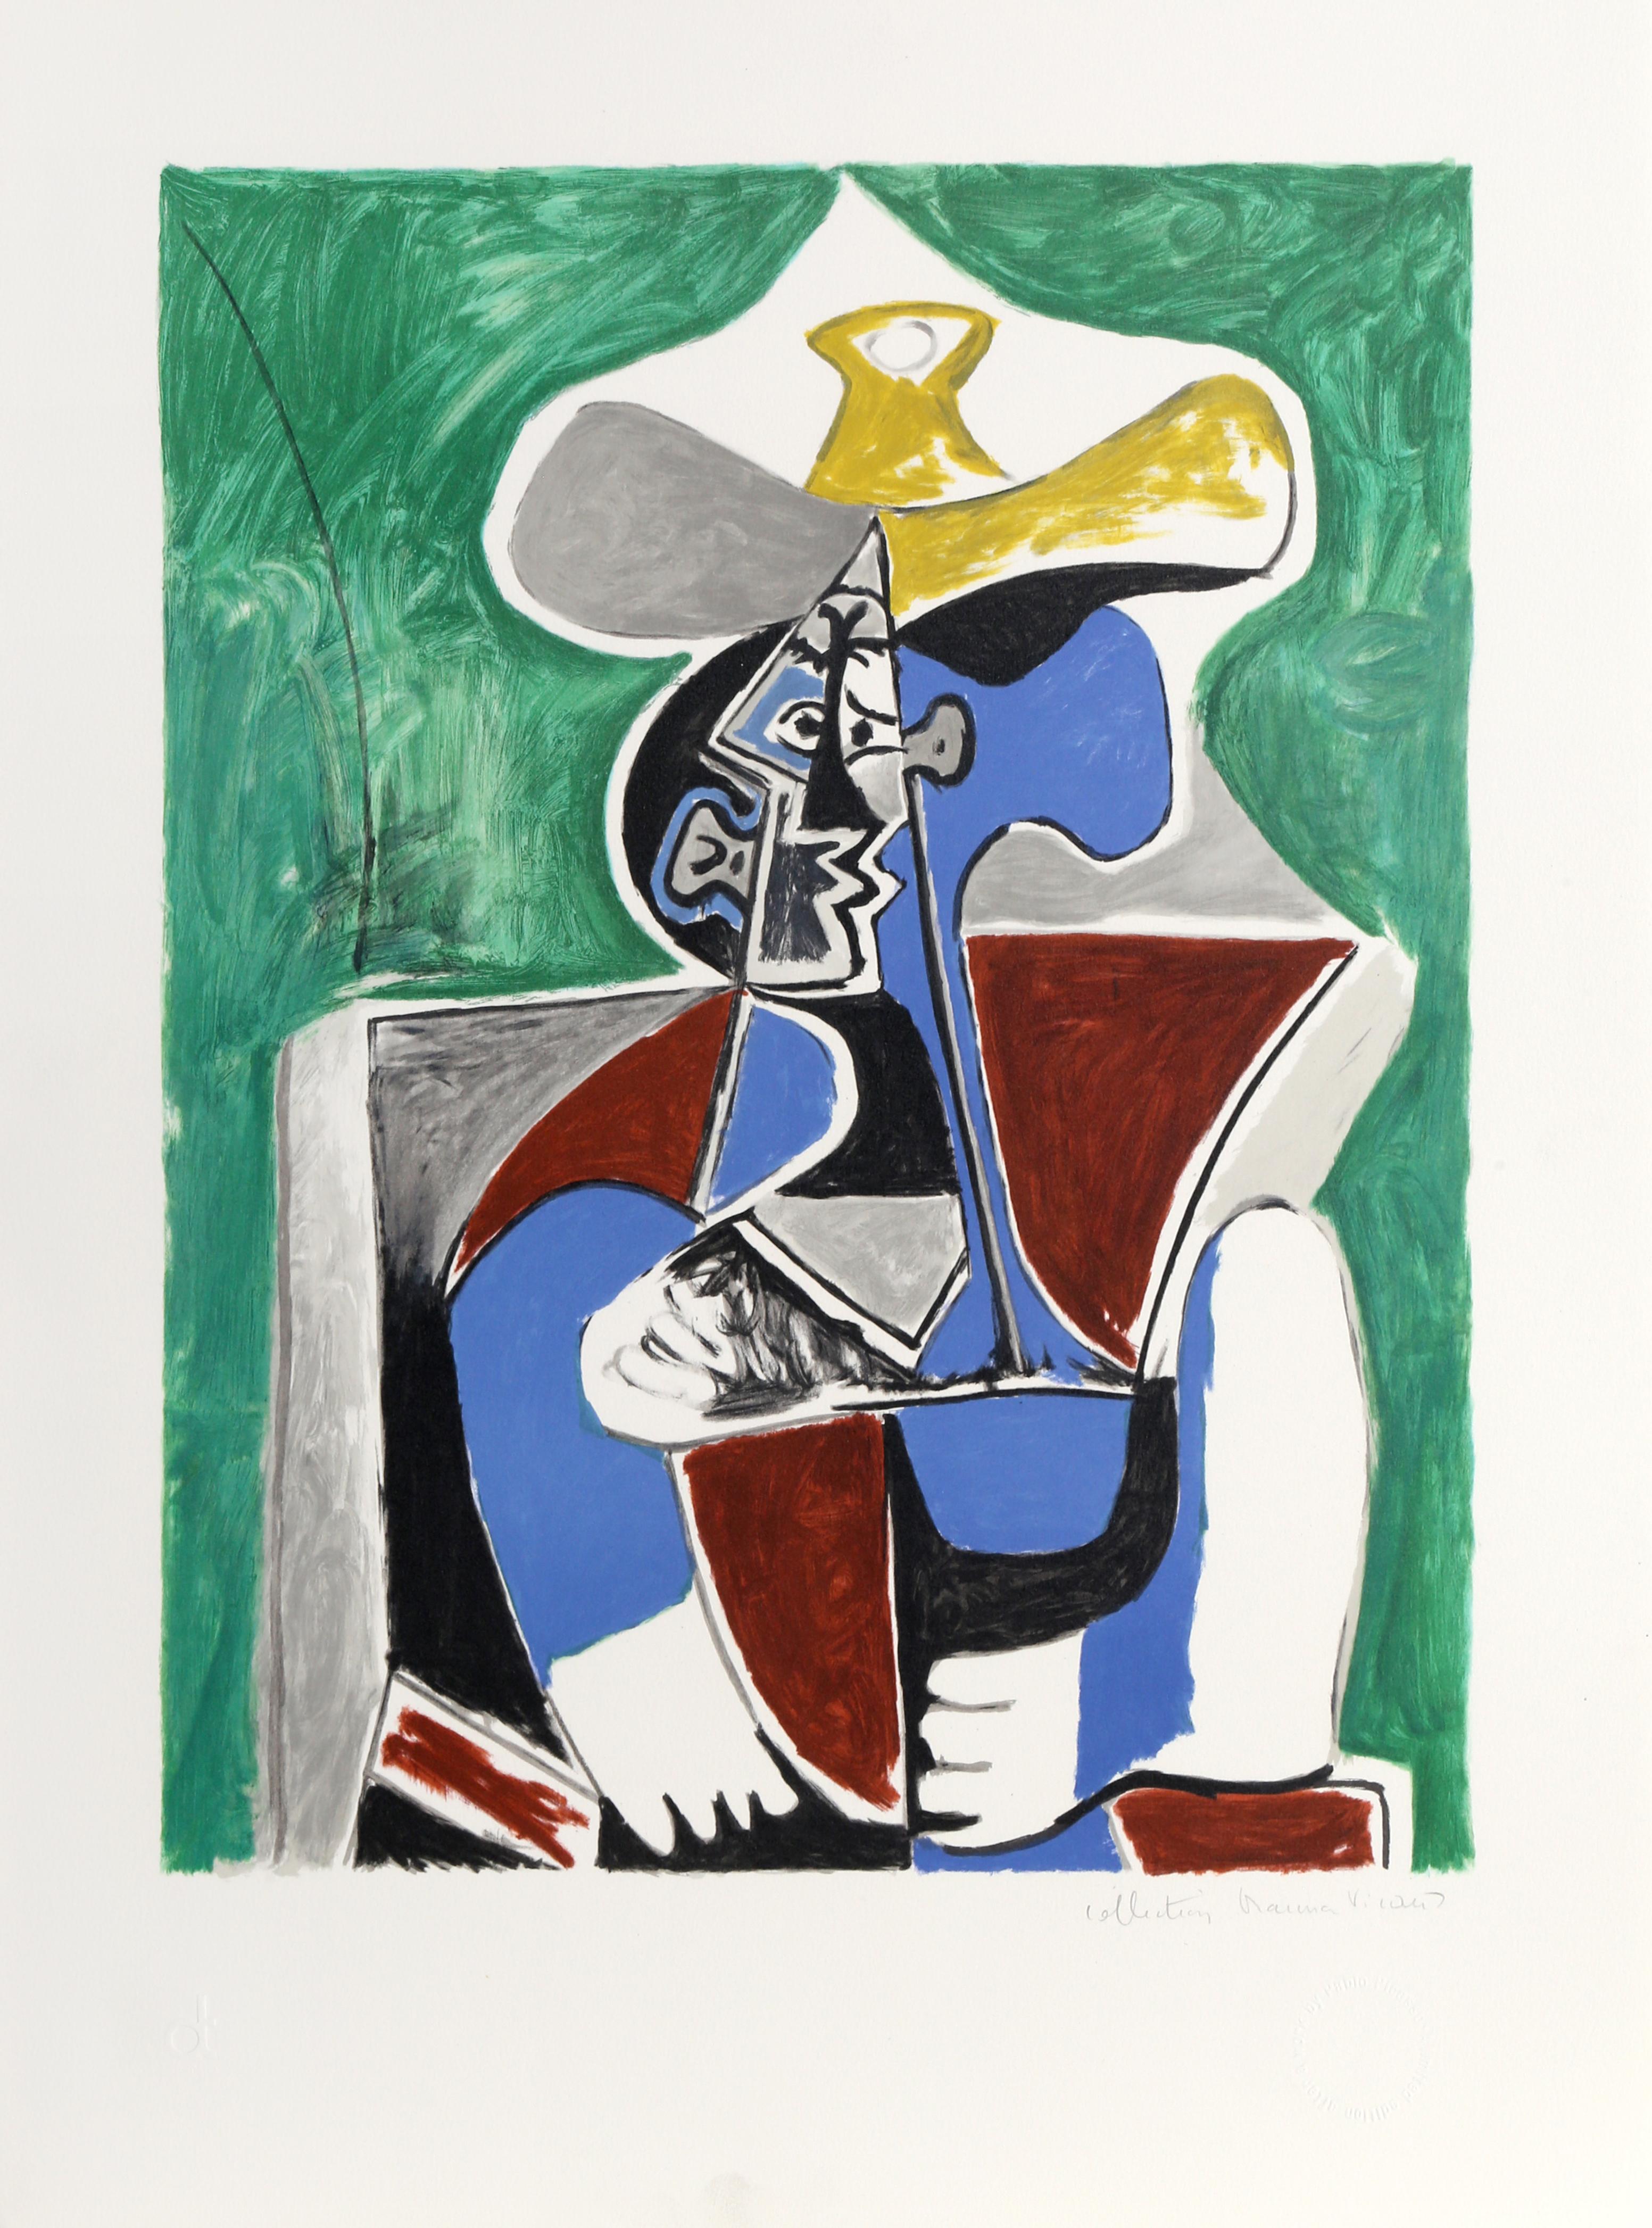 Pablo Picasso Abstract Print - Buste au Chapeau Jaune et Gris 